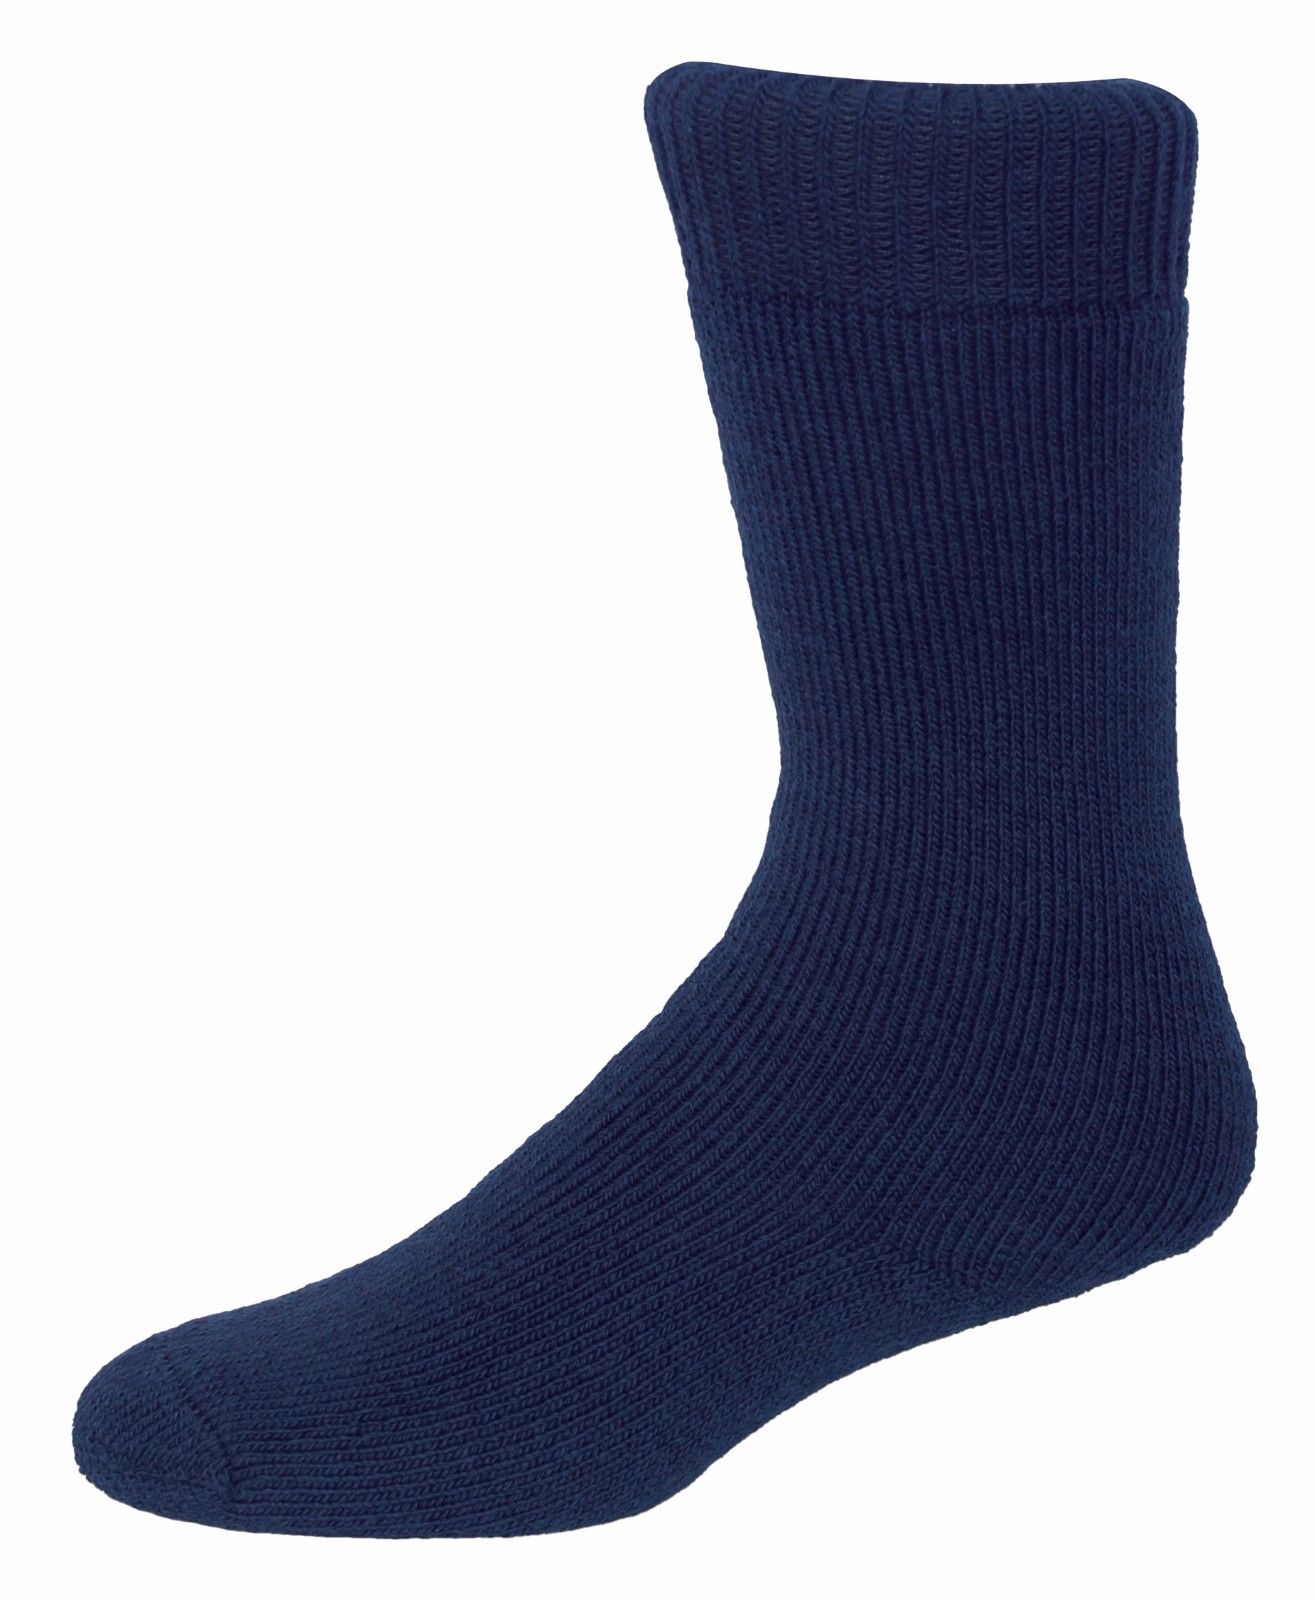 Hoggs of Fife - Adventure Short Socks